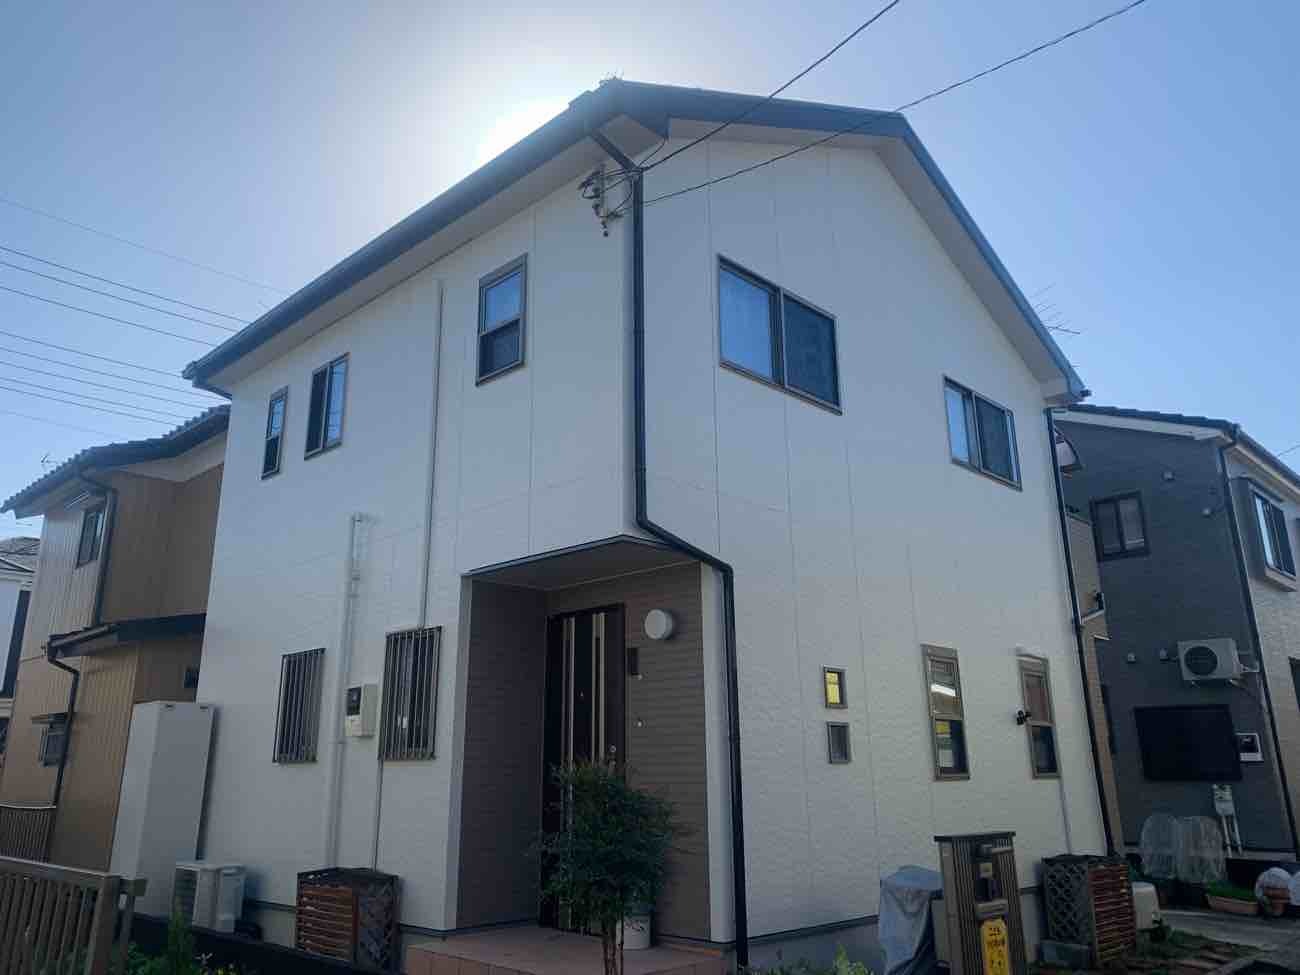 【埼玉県吉川市】S様邸外壁屋根塗装工事が完了しました。日本ペイント パーフェクトトップ 画像